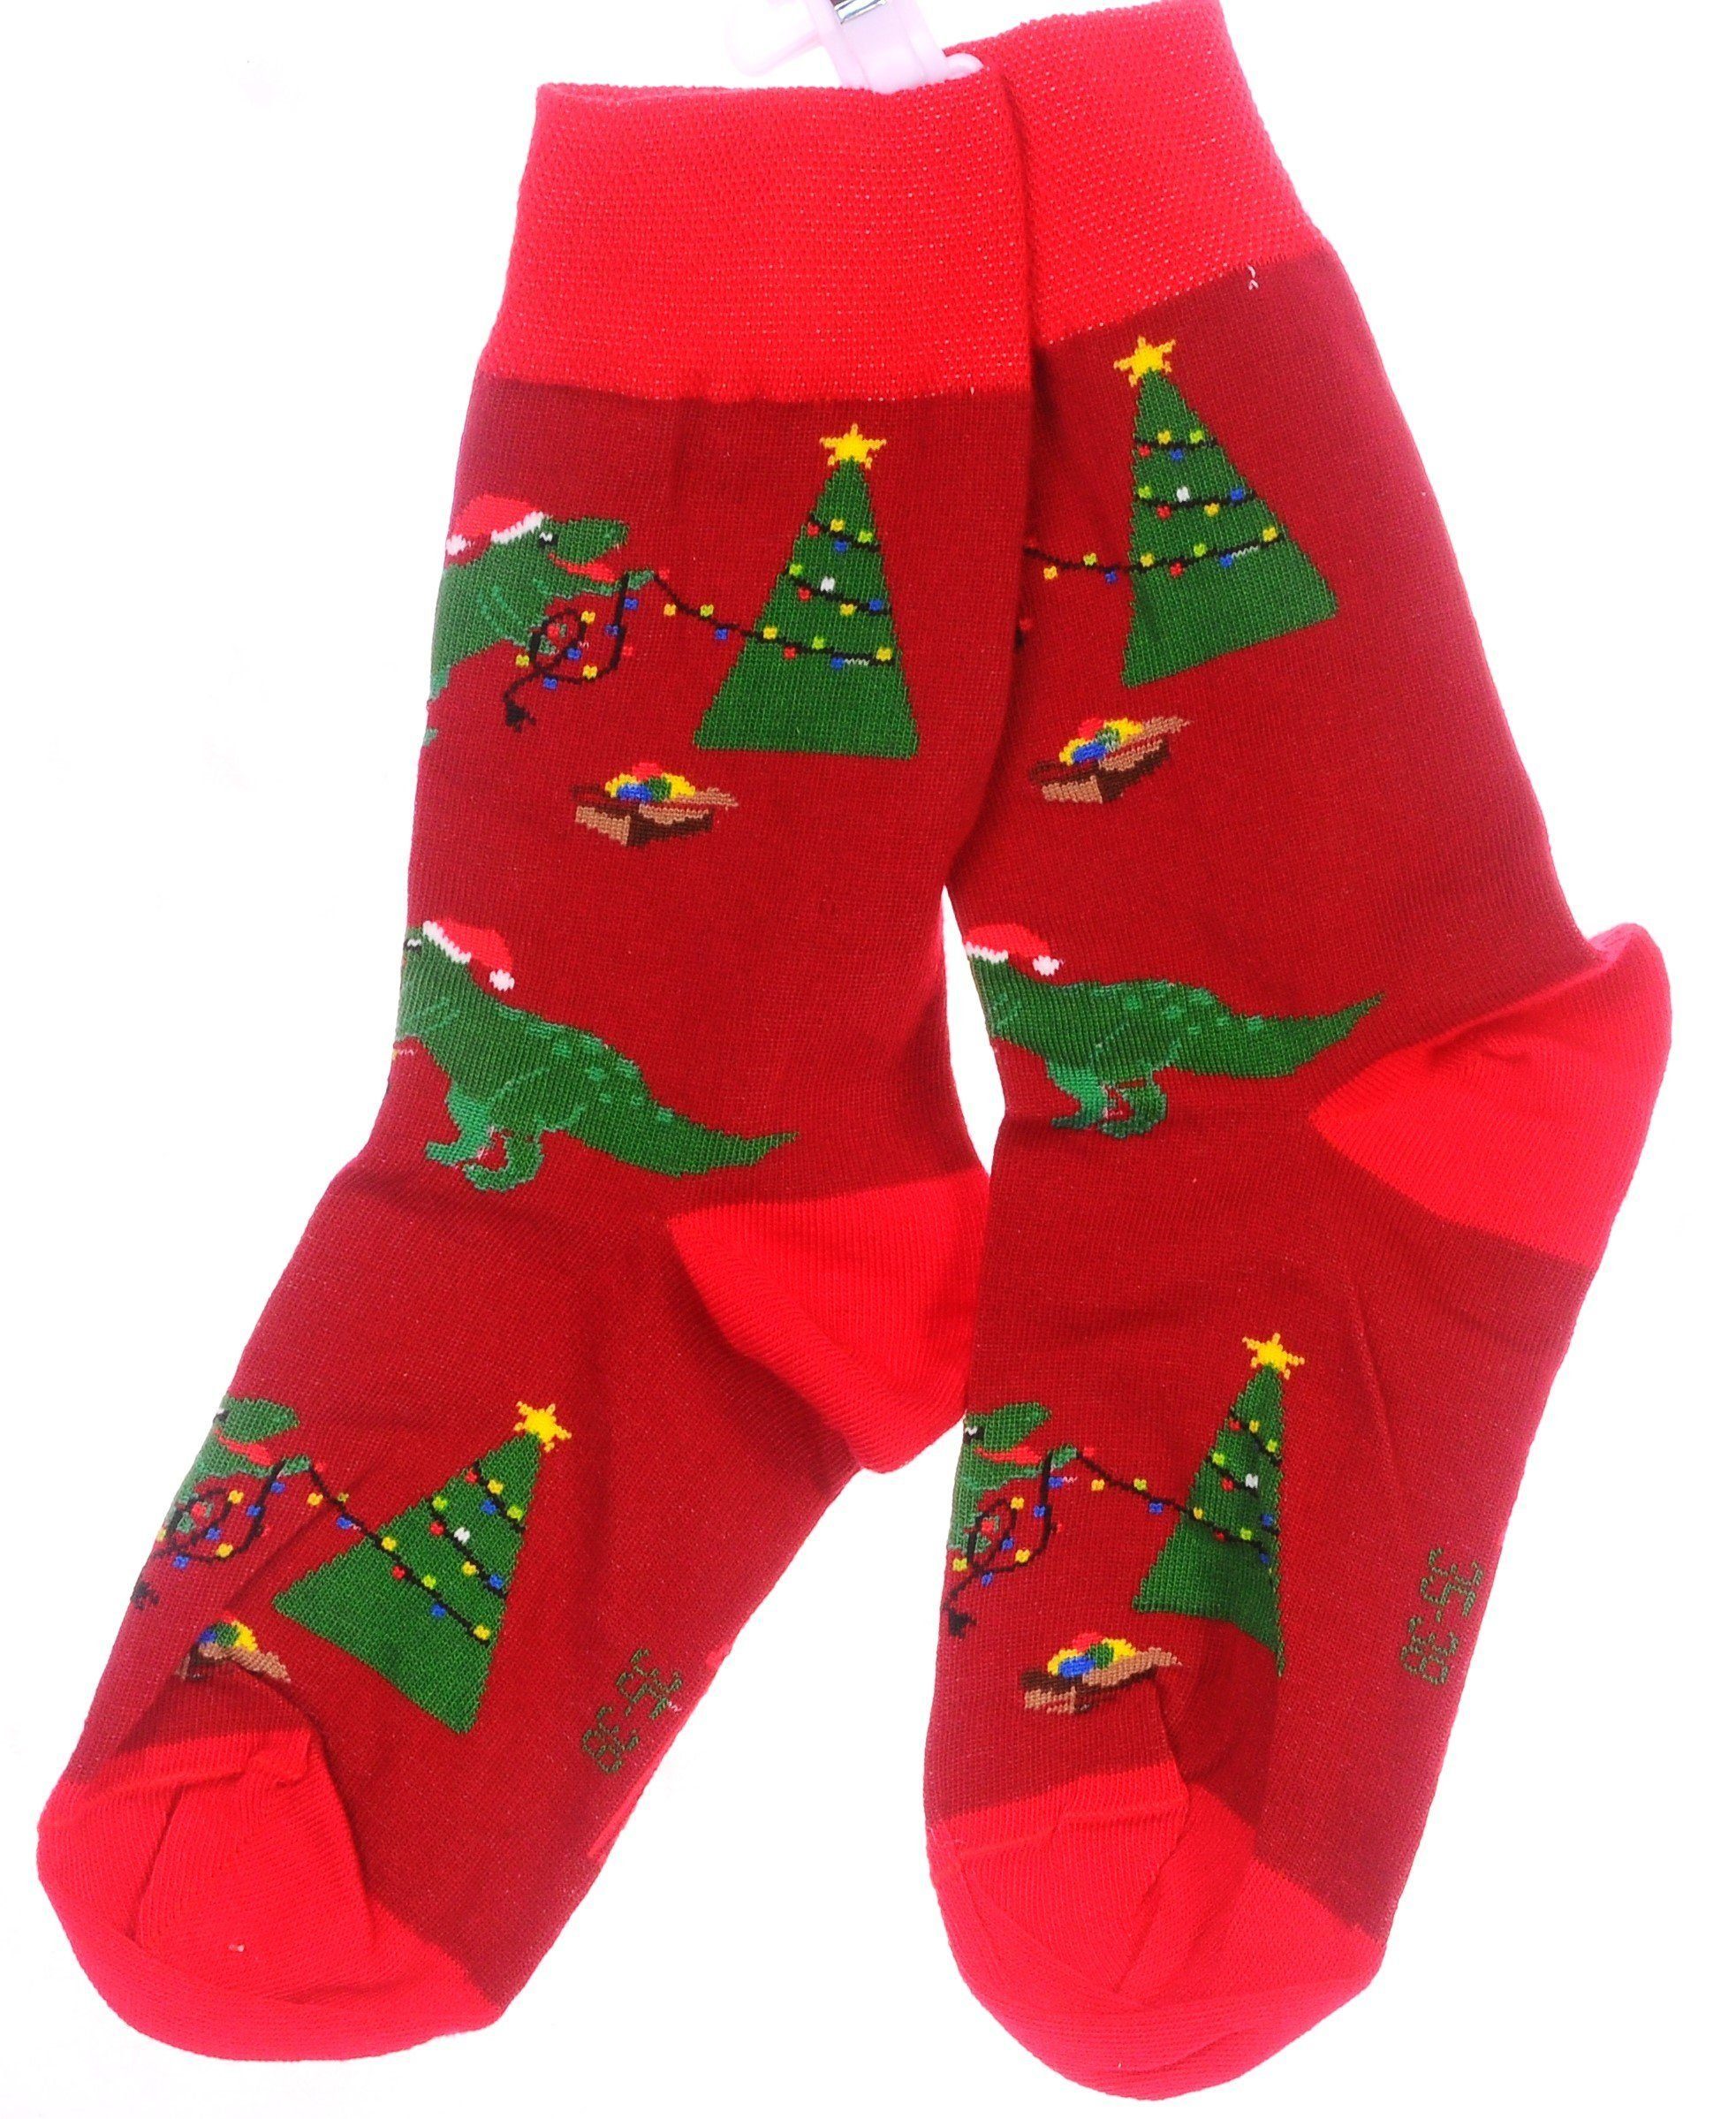 43 Rot_Tanne 35 Weihnachtssocken 1 46 Socken Paar schön, 38 Strümpfe 39 42 Martinex Socken weihnachtlich bunt,